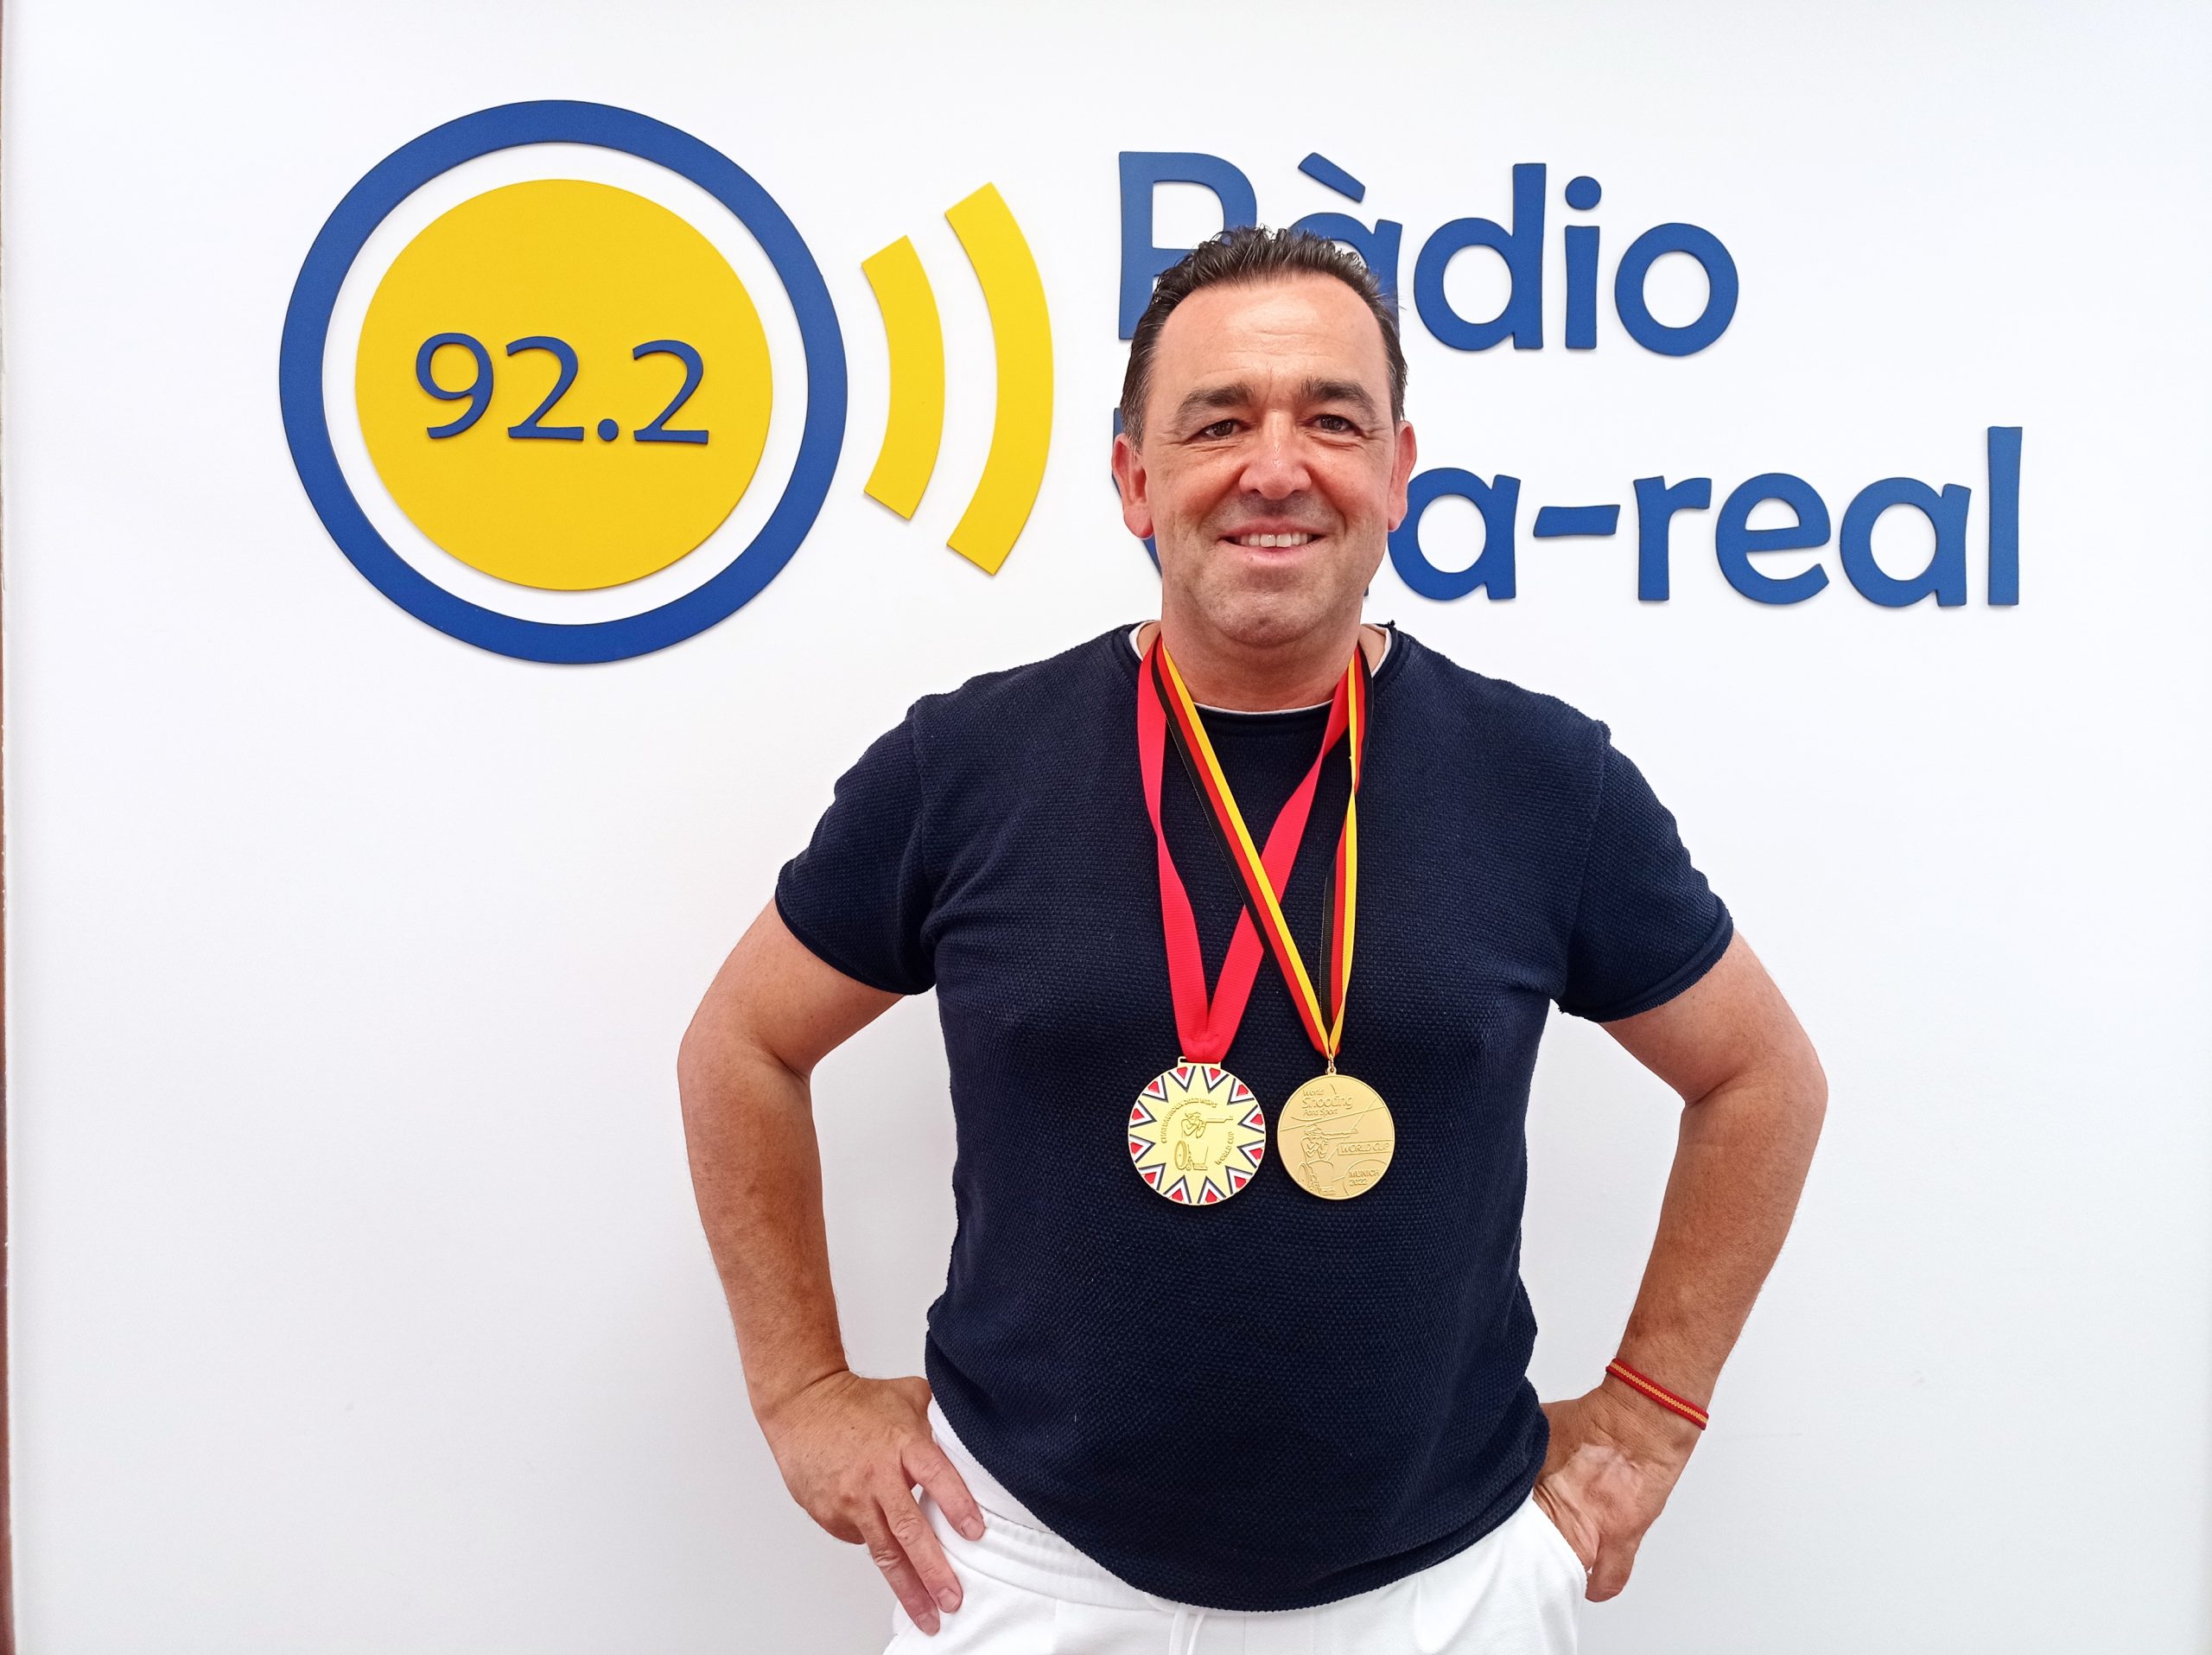 Entrevista al campeón del mundo Olímpico de Tiro, Adrián Bécquer